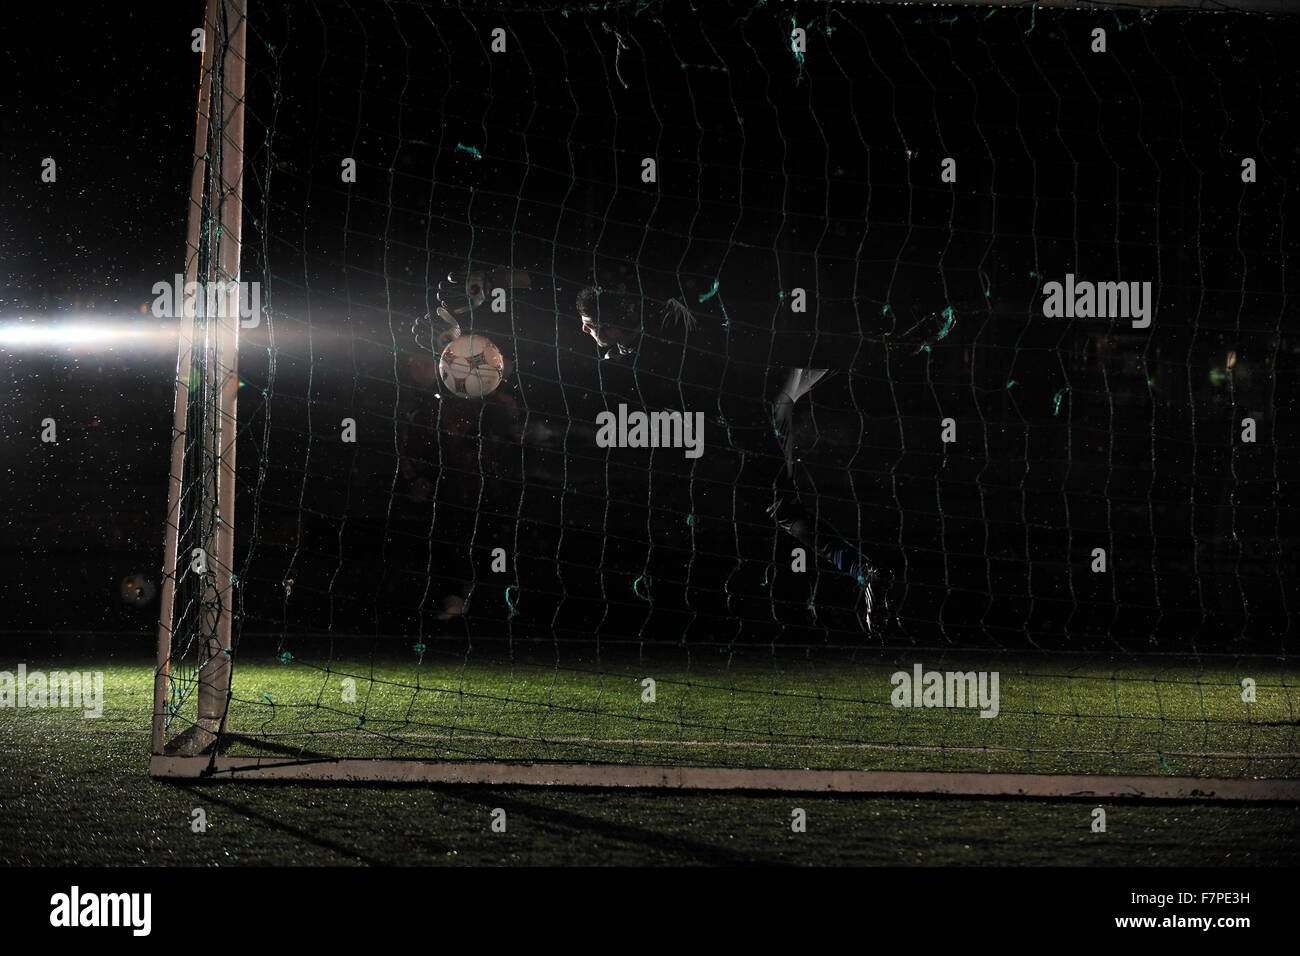 Fußball Fußball-Torwart in der Nacht mit Regen Stockfoto